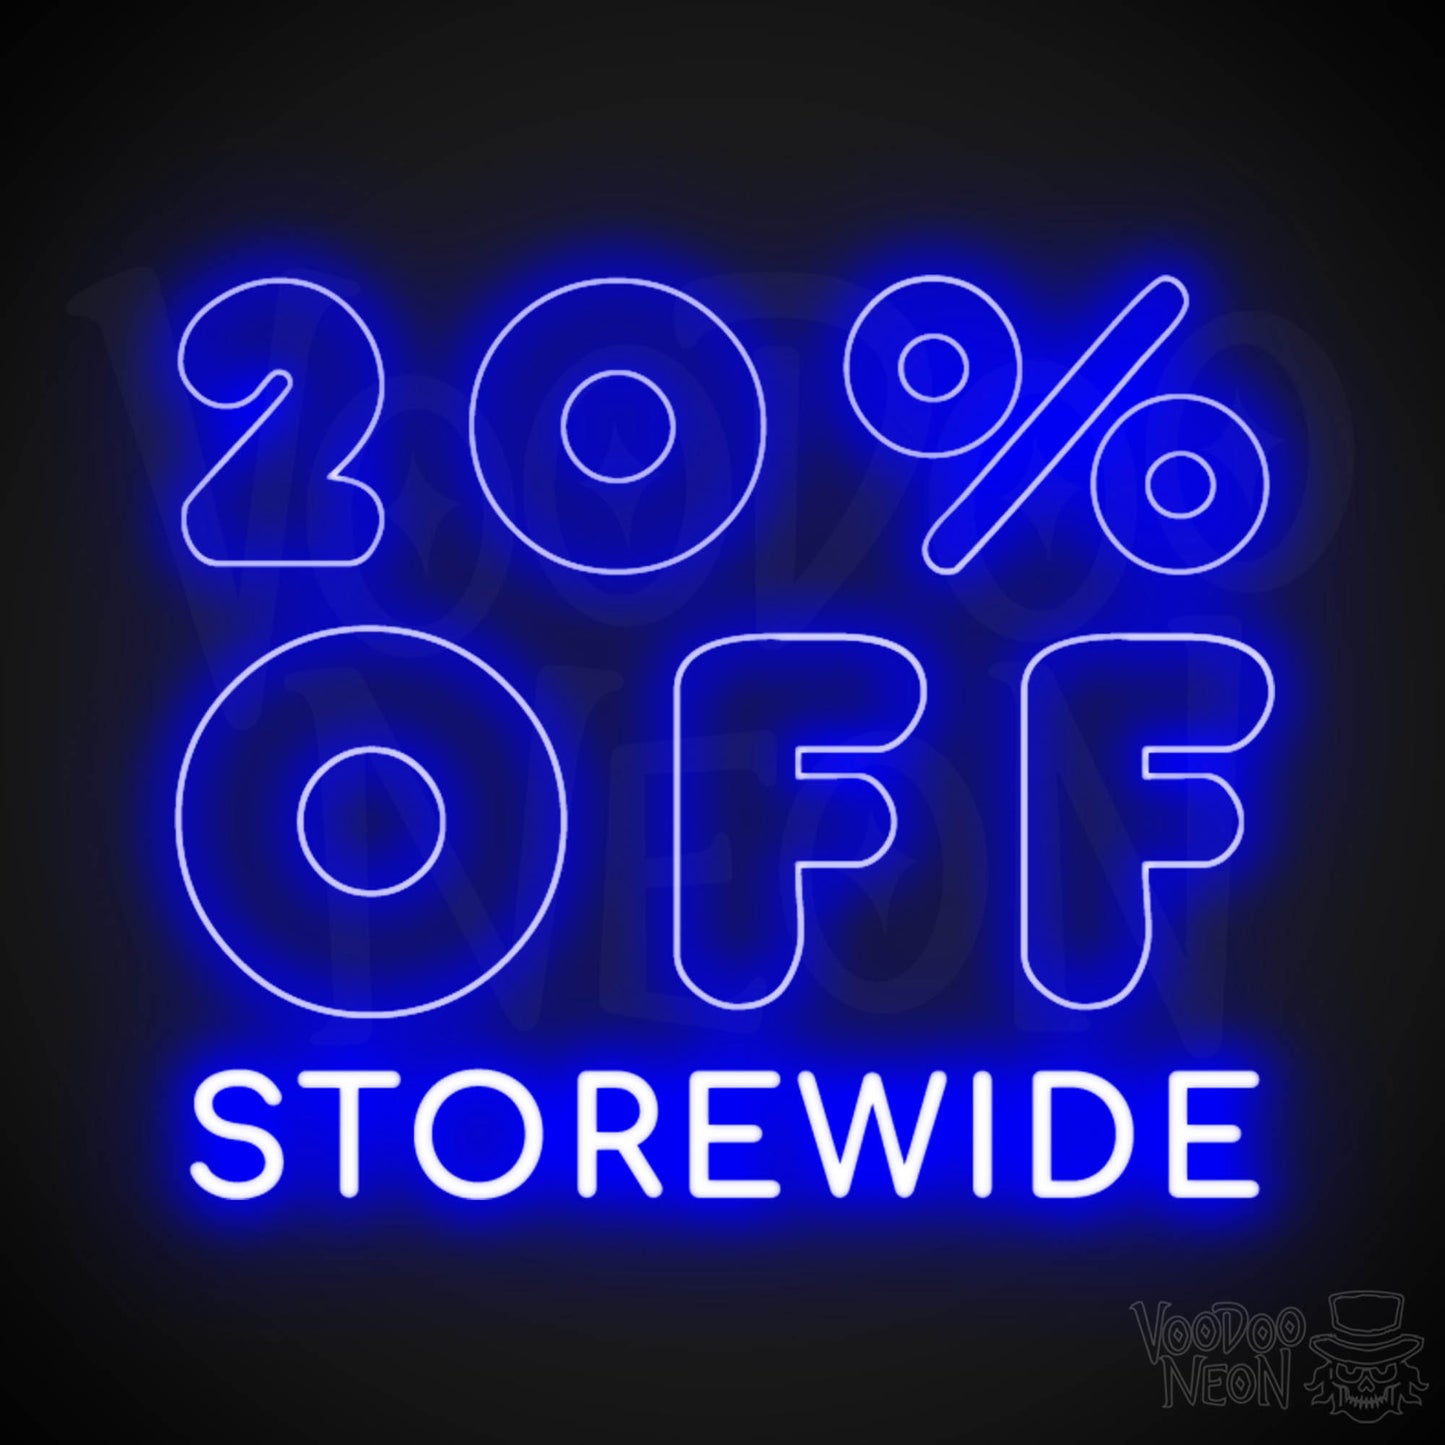 20% Off Storewide Neon Sign - 20% Off Storewide Sign - LED Shop Sign - Color Dark Blue